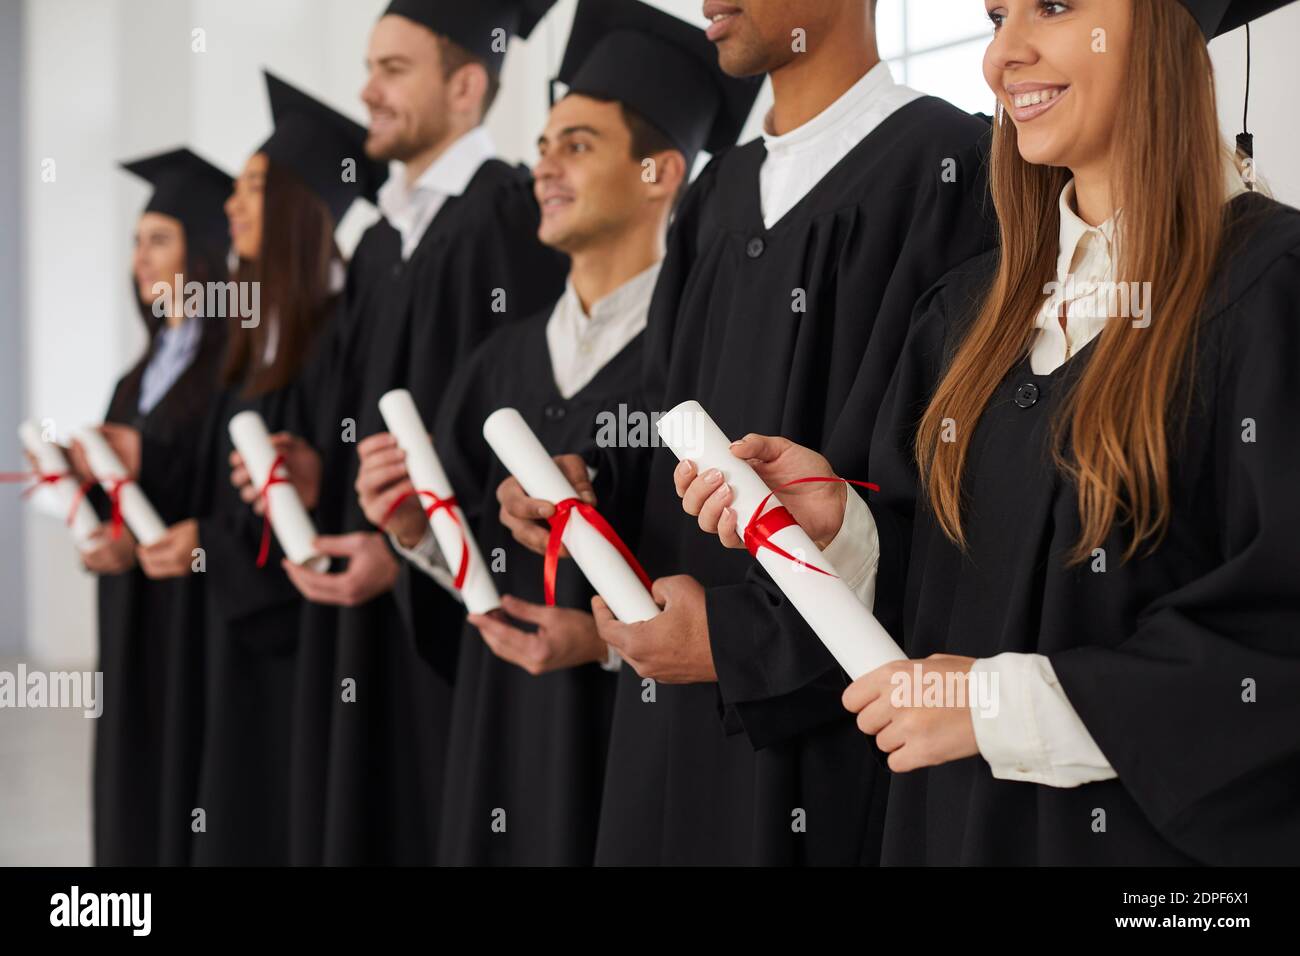 Gruppe von multiethnischen Menschen, die in einer Reihe stehen und Rollen von Diplomen in den Händen halten. Stockfoto